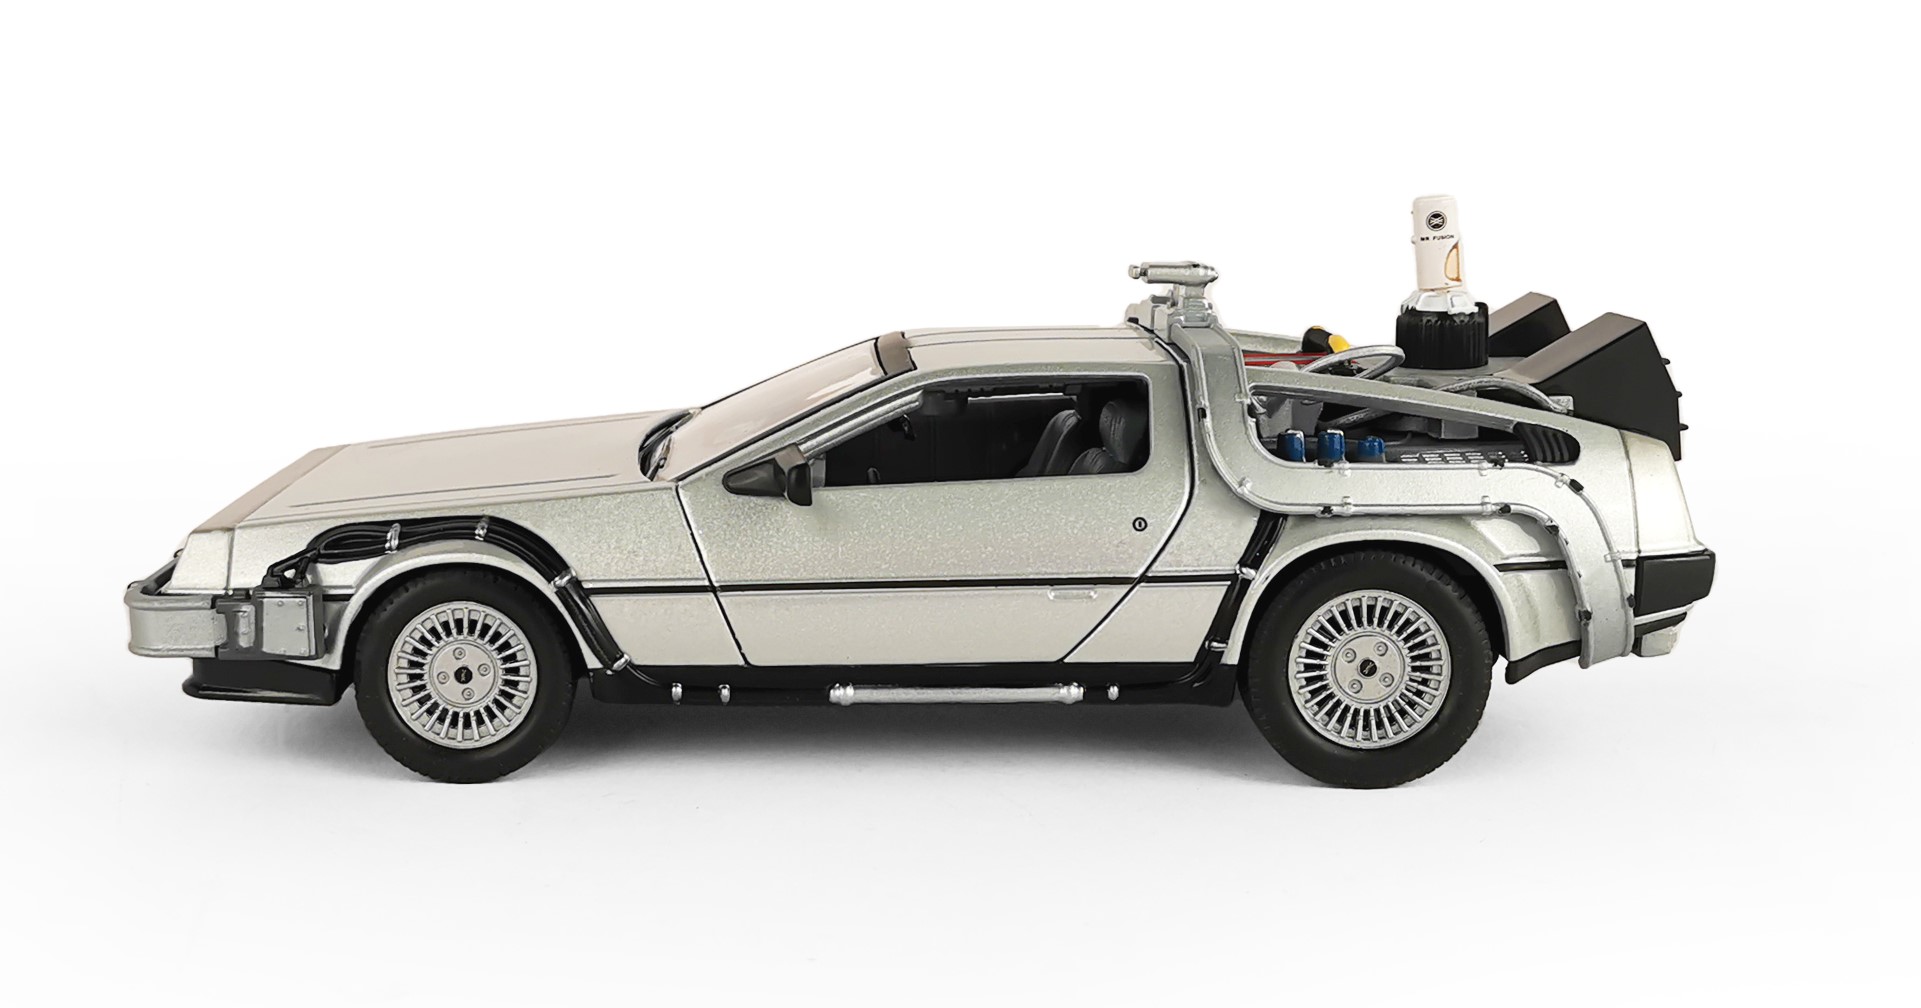 Машинка WELLY 1:24 модель DeLorean DMC-12 из кинофильма Назад в будущее 22441FV-GW - фото 3